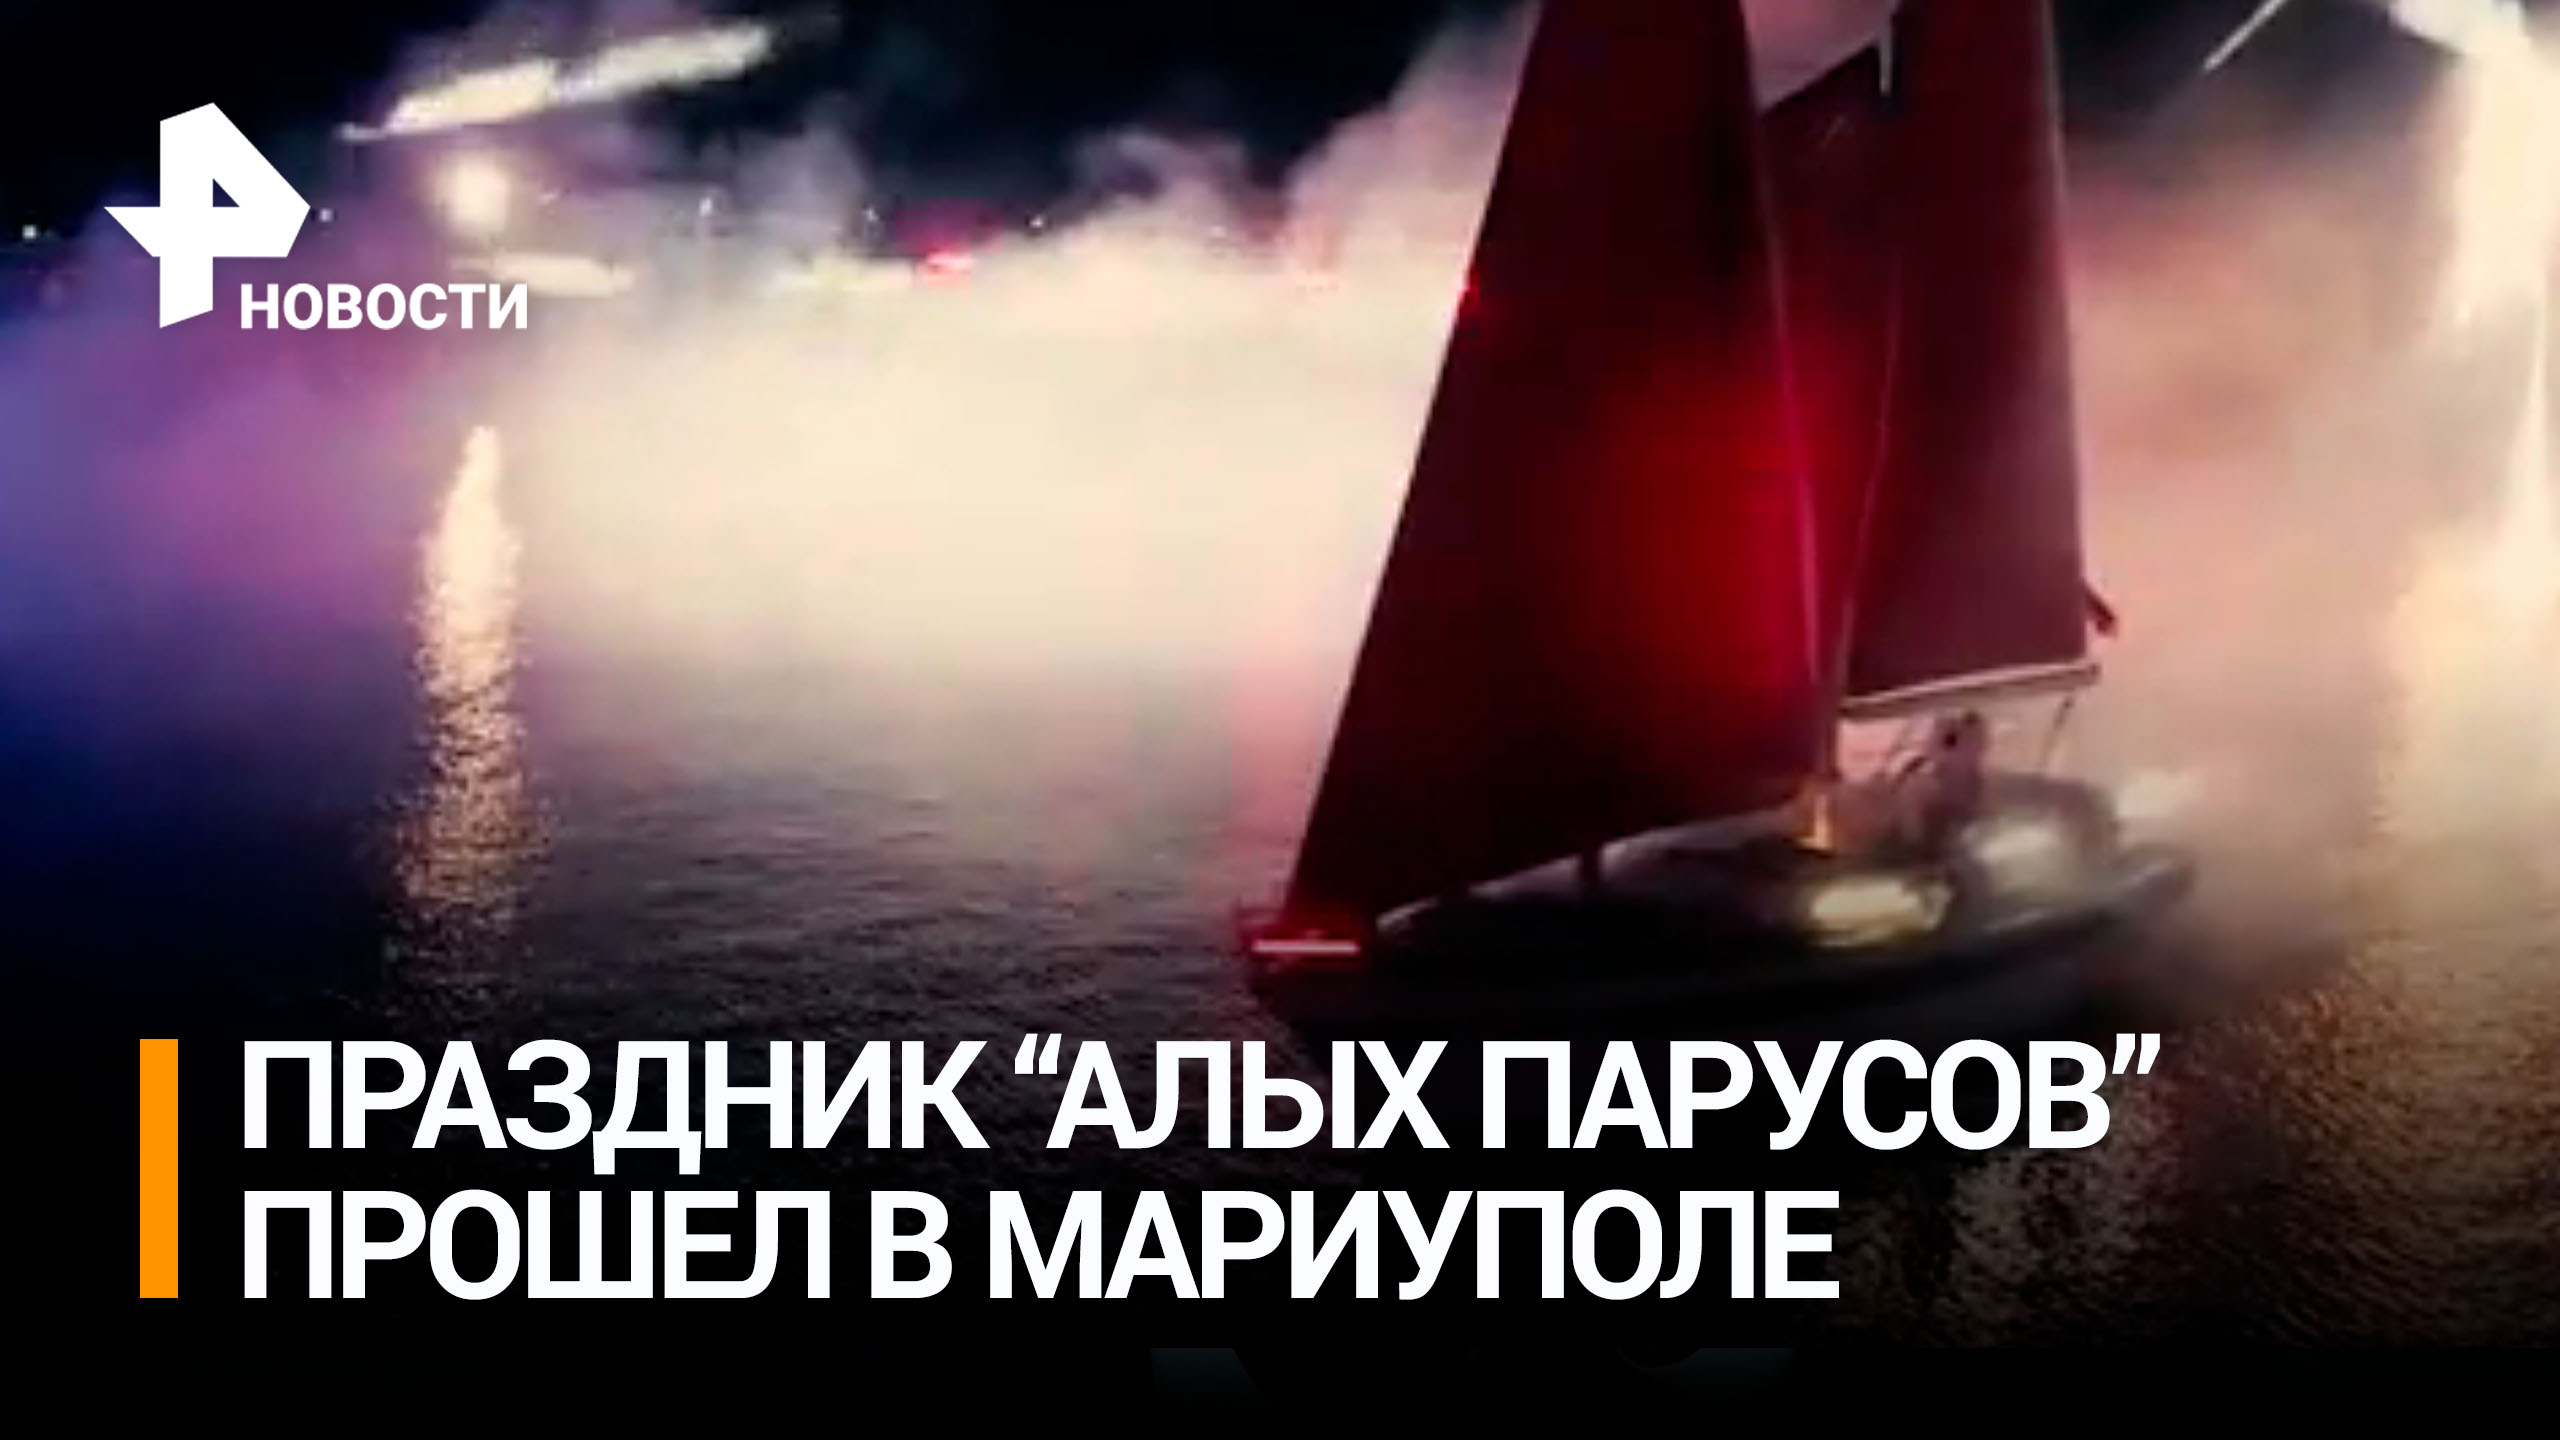 В Мариуполе сотни выпускников увидели яхту "Ассоль" под алыми парусами / РЕН Новости